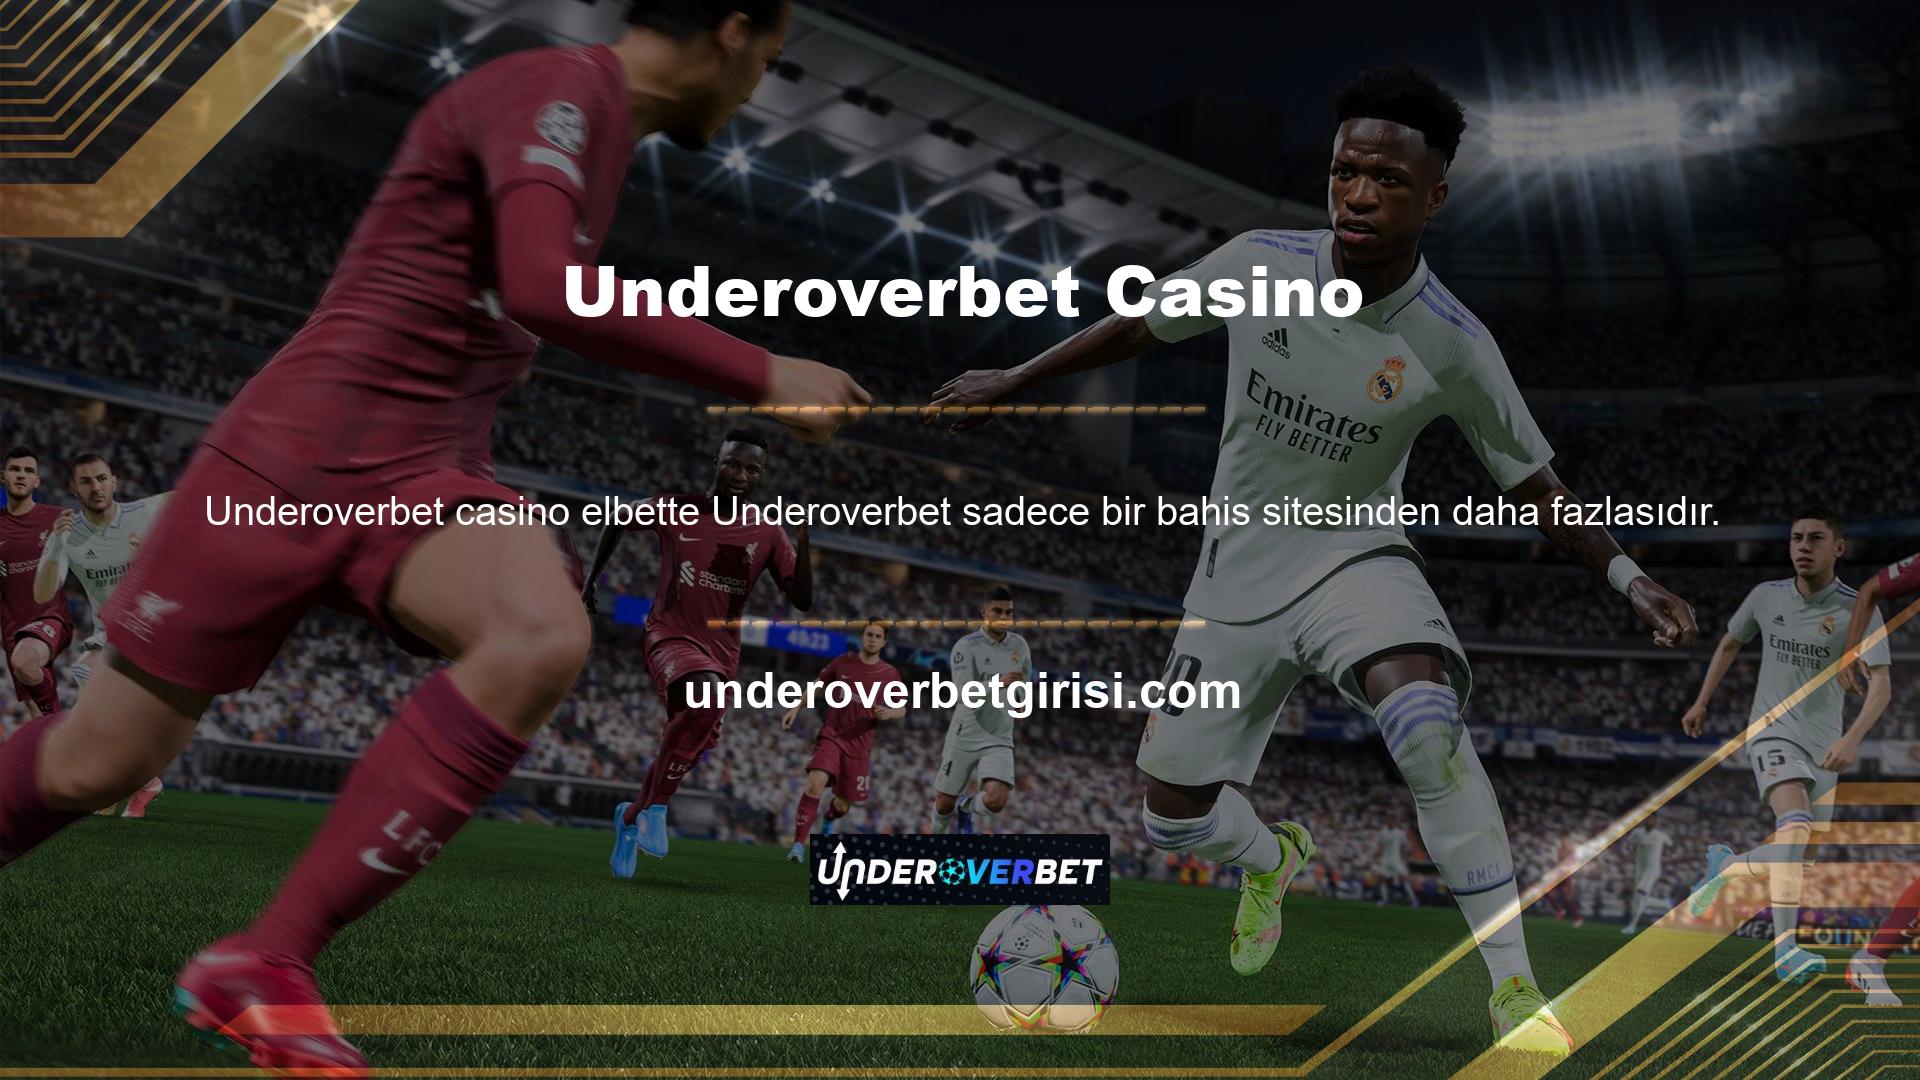 Underoverbet Casino, kullanıcılara spor bahislerinin yanı sıra çok çeşitli casino oyunları sunmaktadır